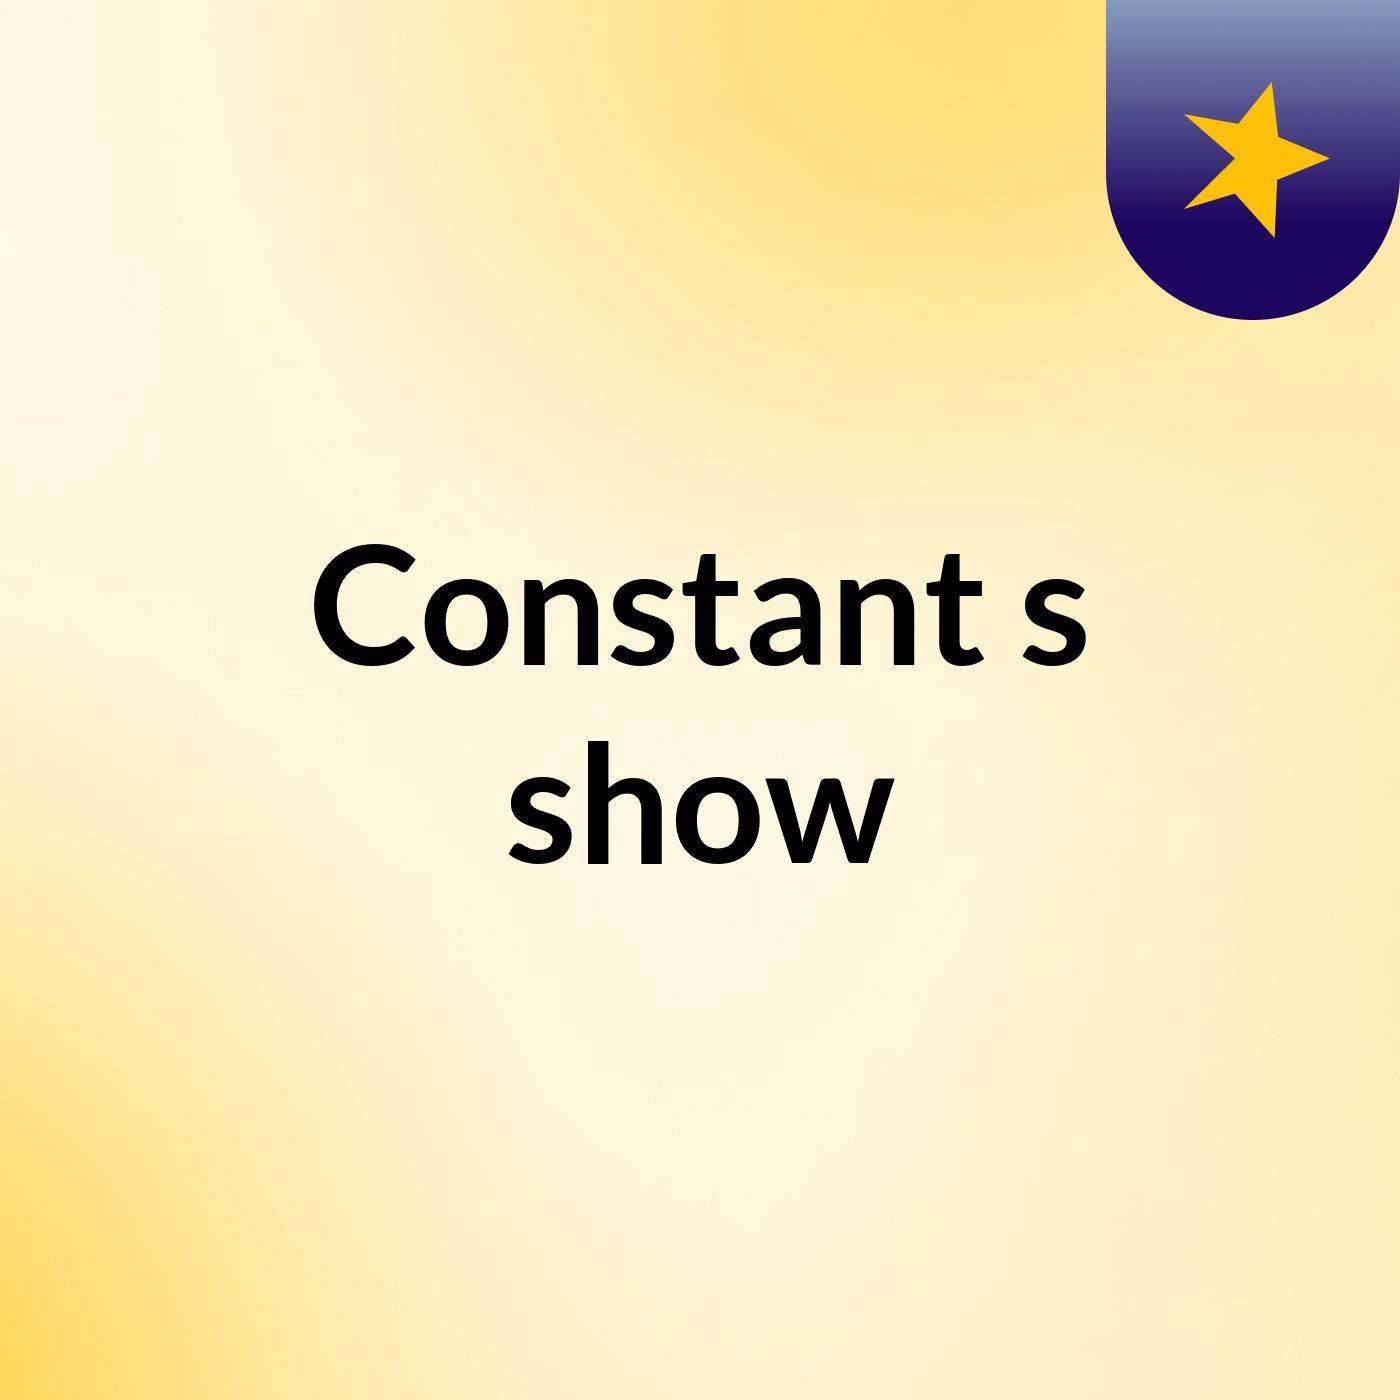 Constant's show